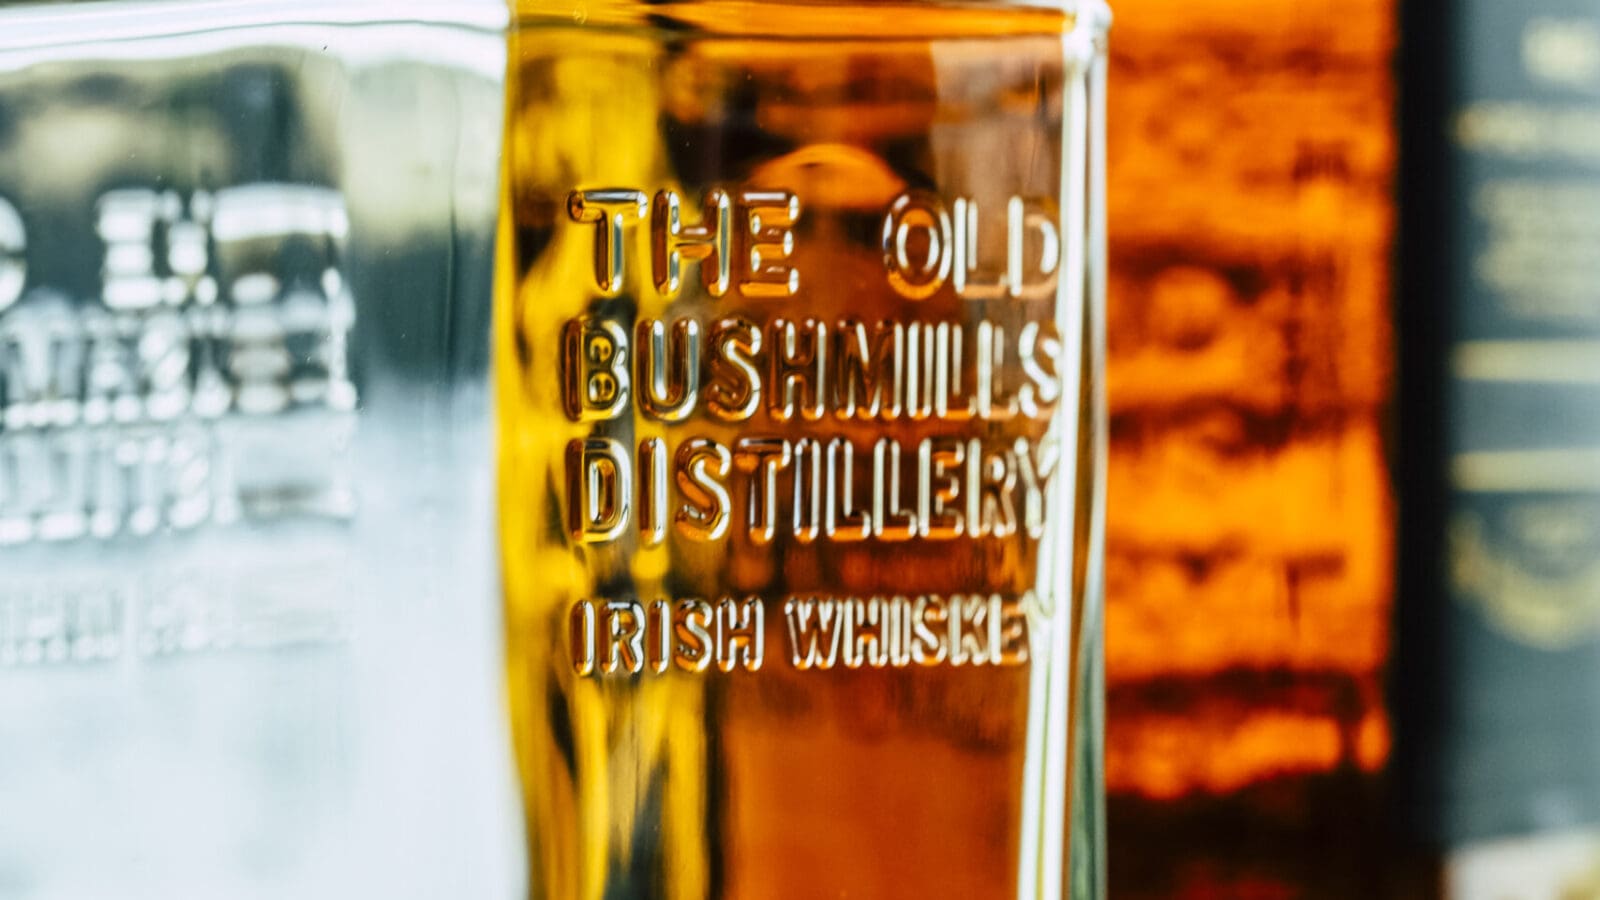 OXMOX verlost Whiskey-Pakete: Für irische Cocktailkreationen: Bushmills Black Bush Irish Whiskey